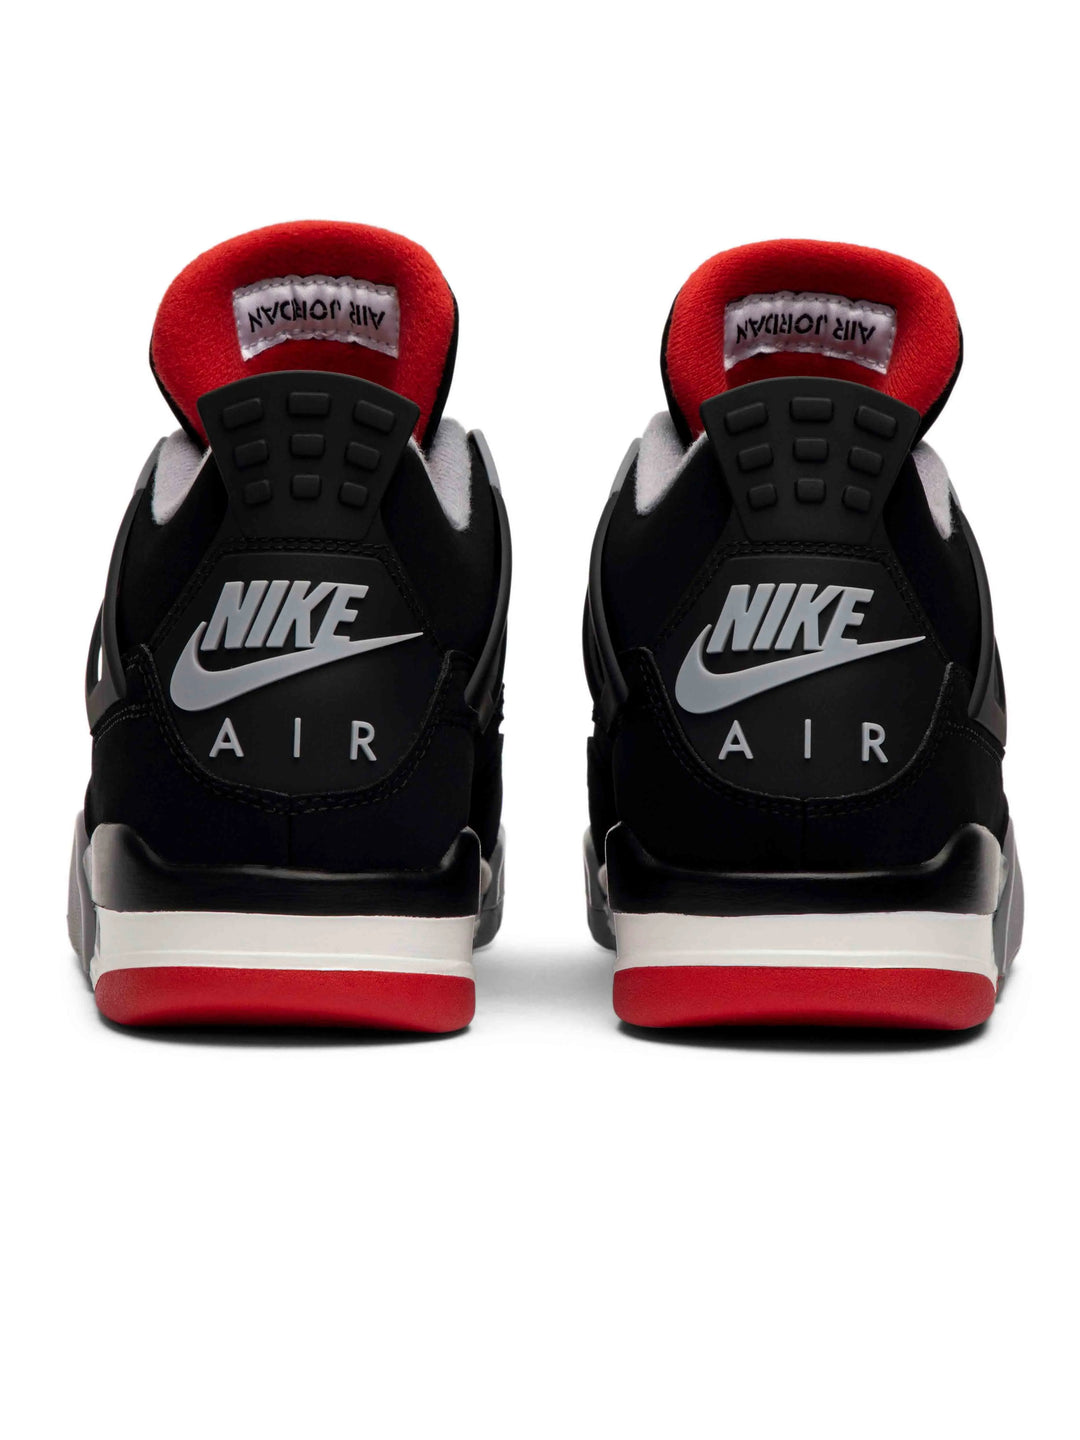 Nike Air Jordan 4 Retro Bred Prior